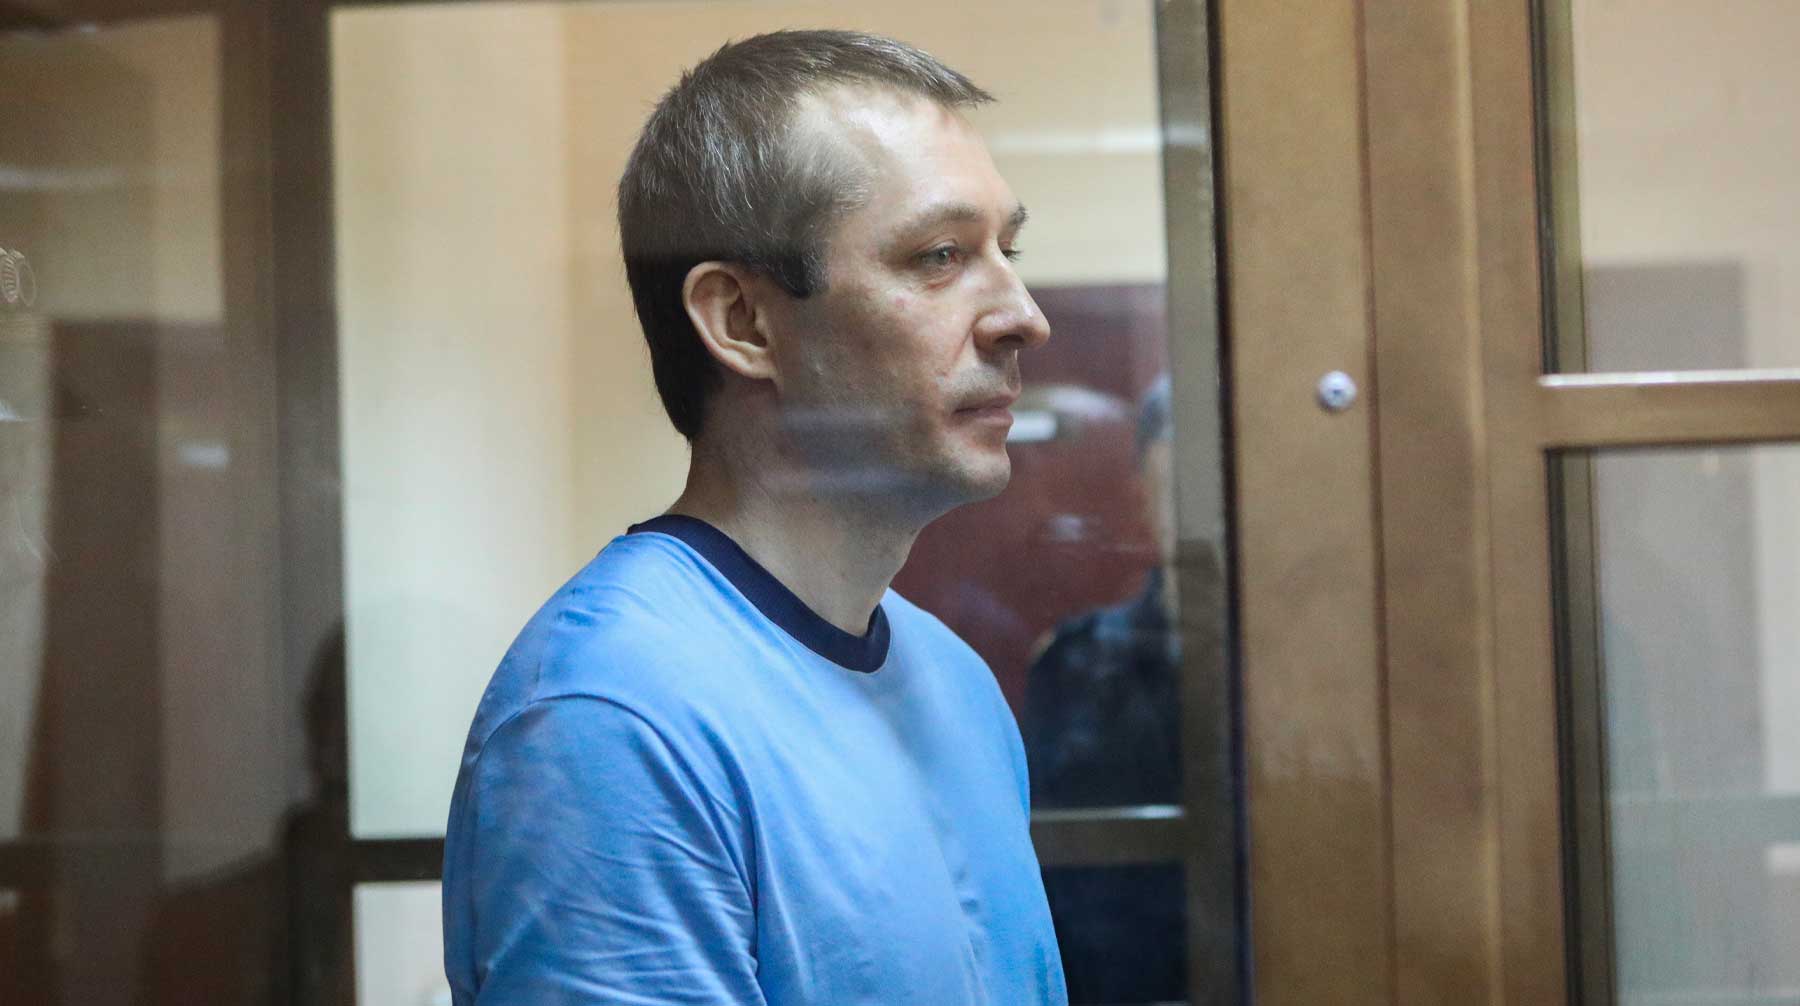 Осужденному ужесточили режим содержания перед этапированием Фото: © GLOBAL LOOK press / City News Moskva